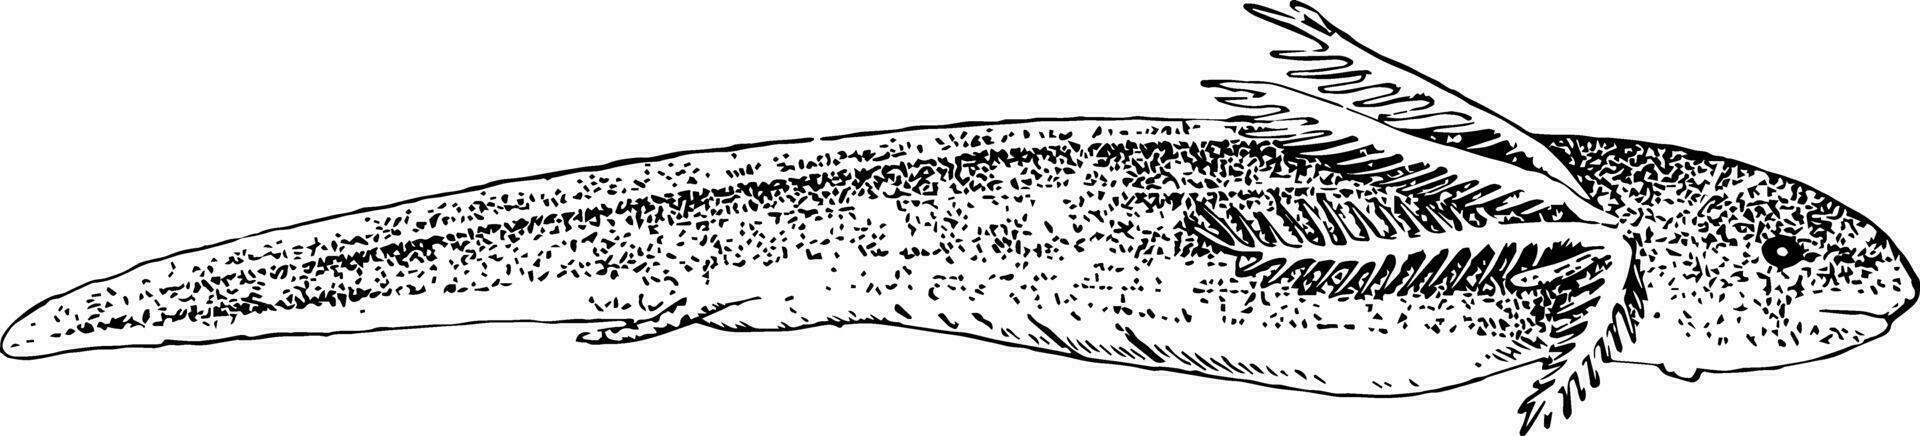 sur americano pez pulmonado larva, Clásico ilustración. vector